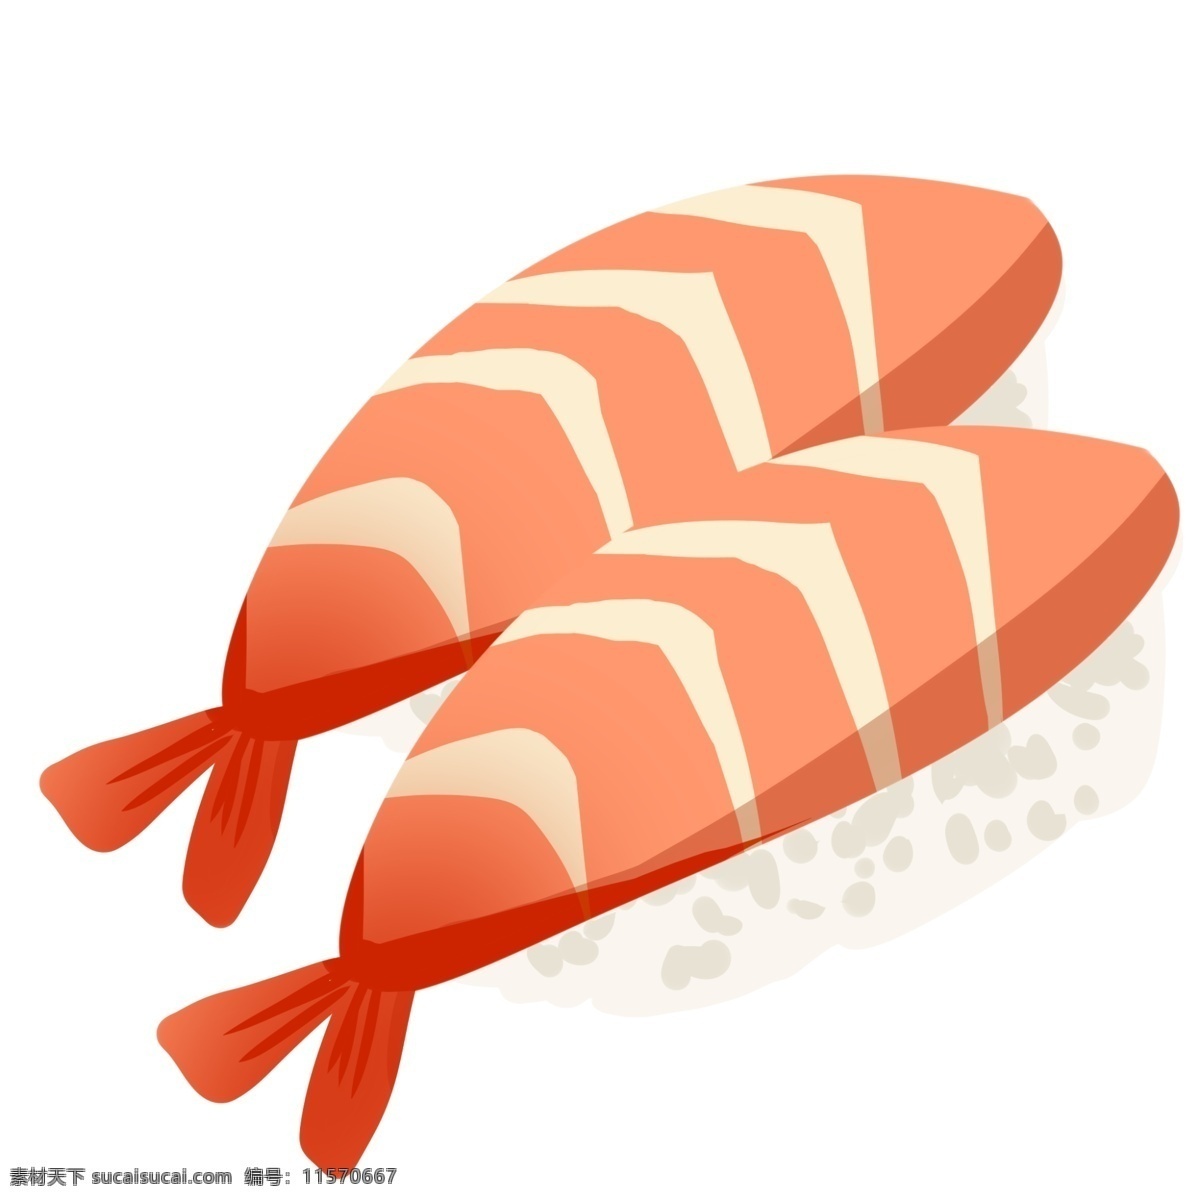 美味 三文鱼 寿司 海鲜 食物